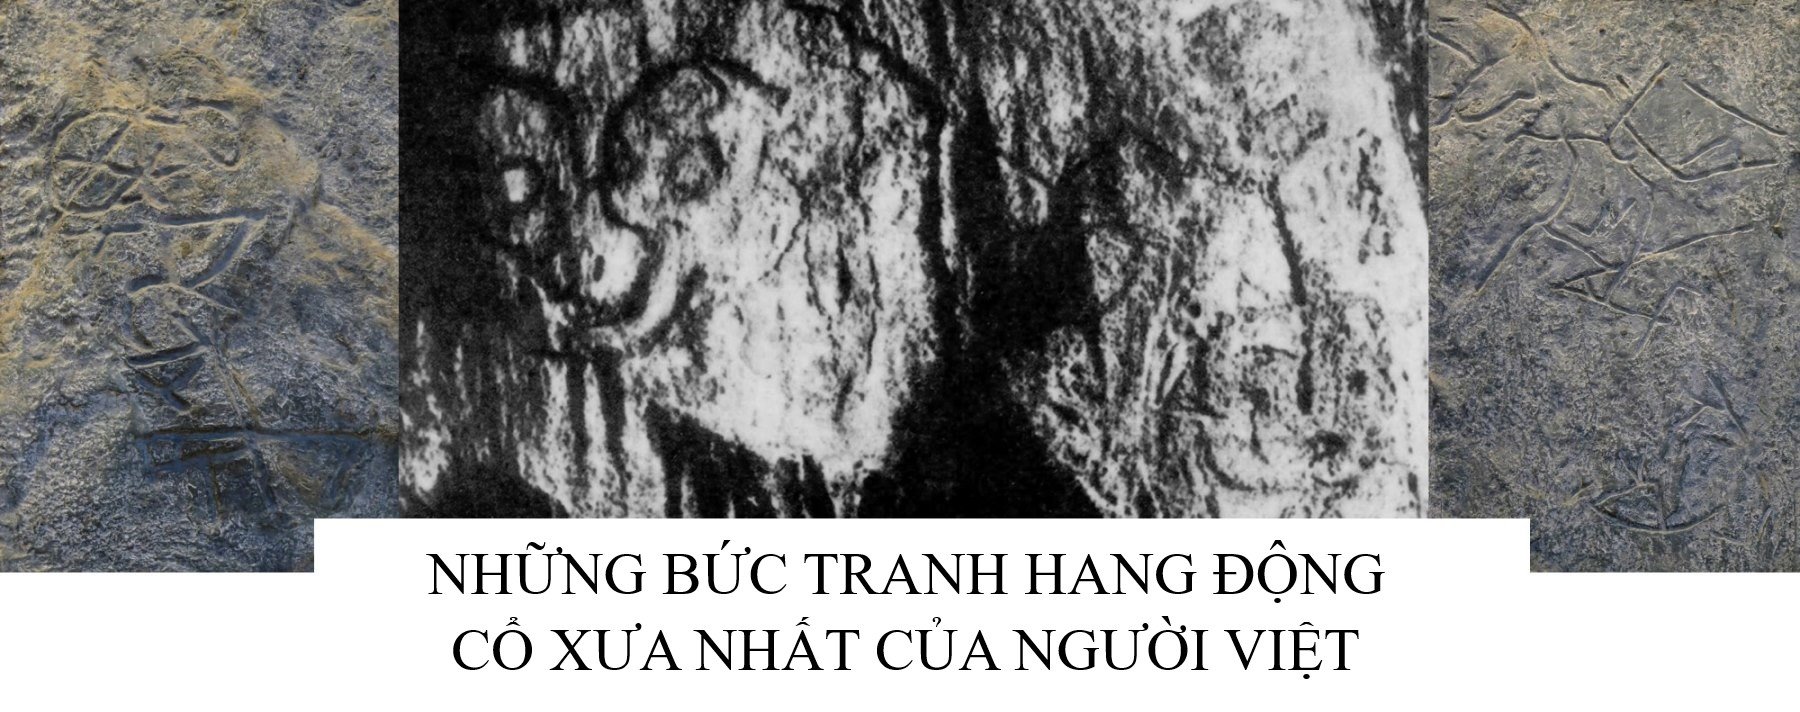 Những bức tranh hang động cổ xưa nhất của người Việt